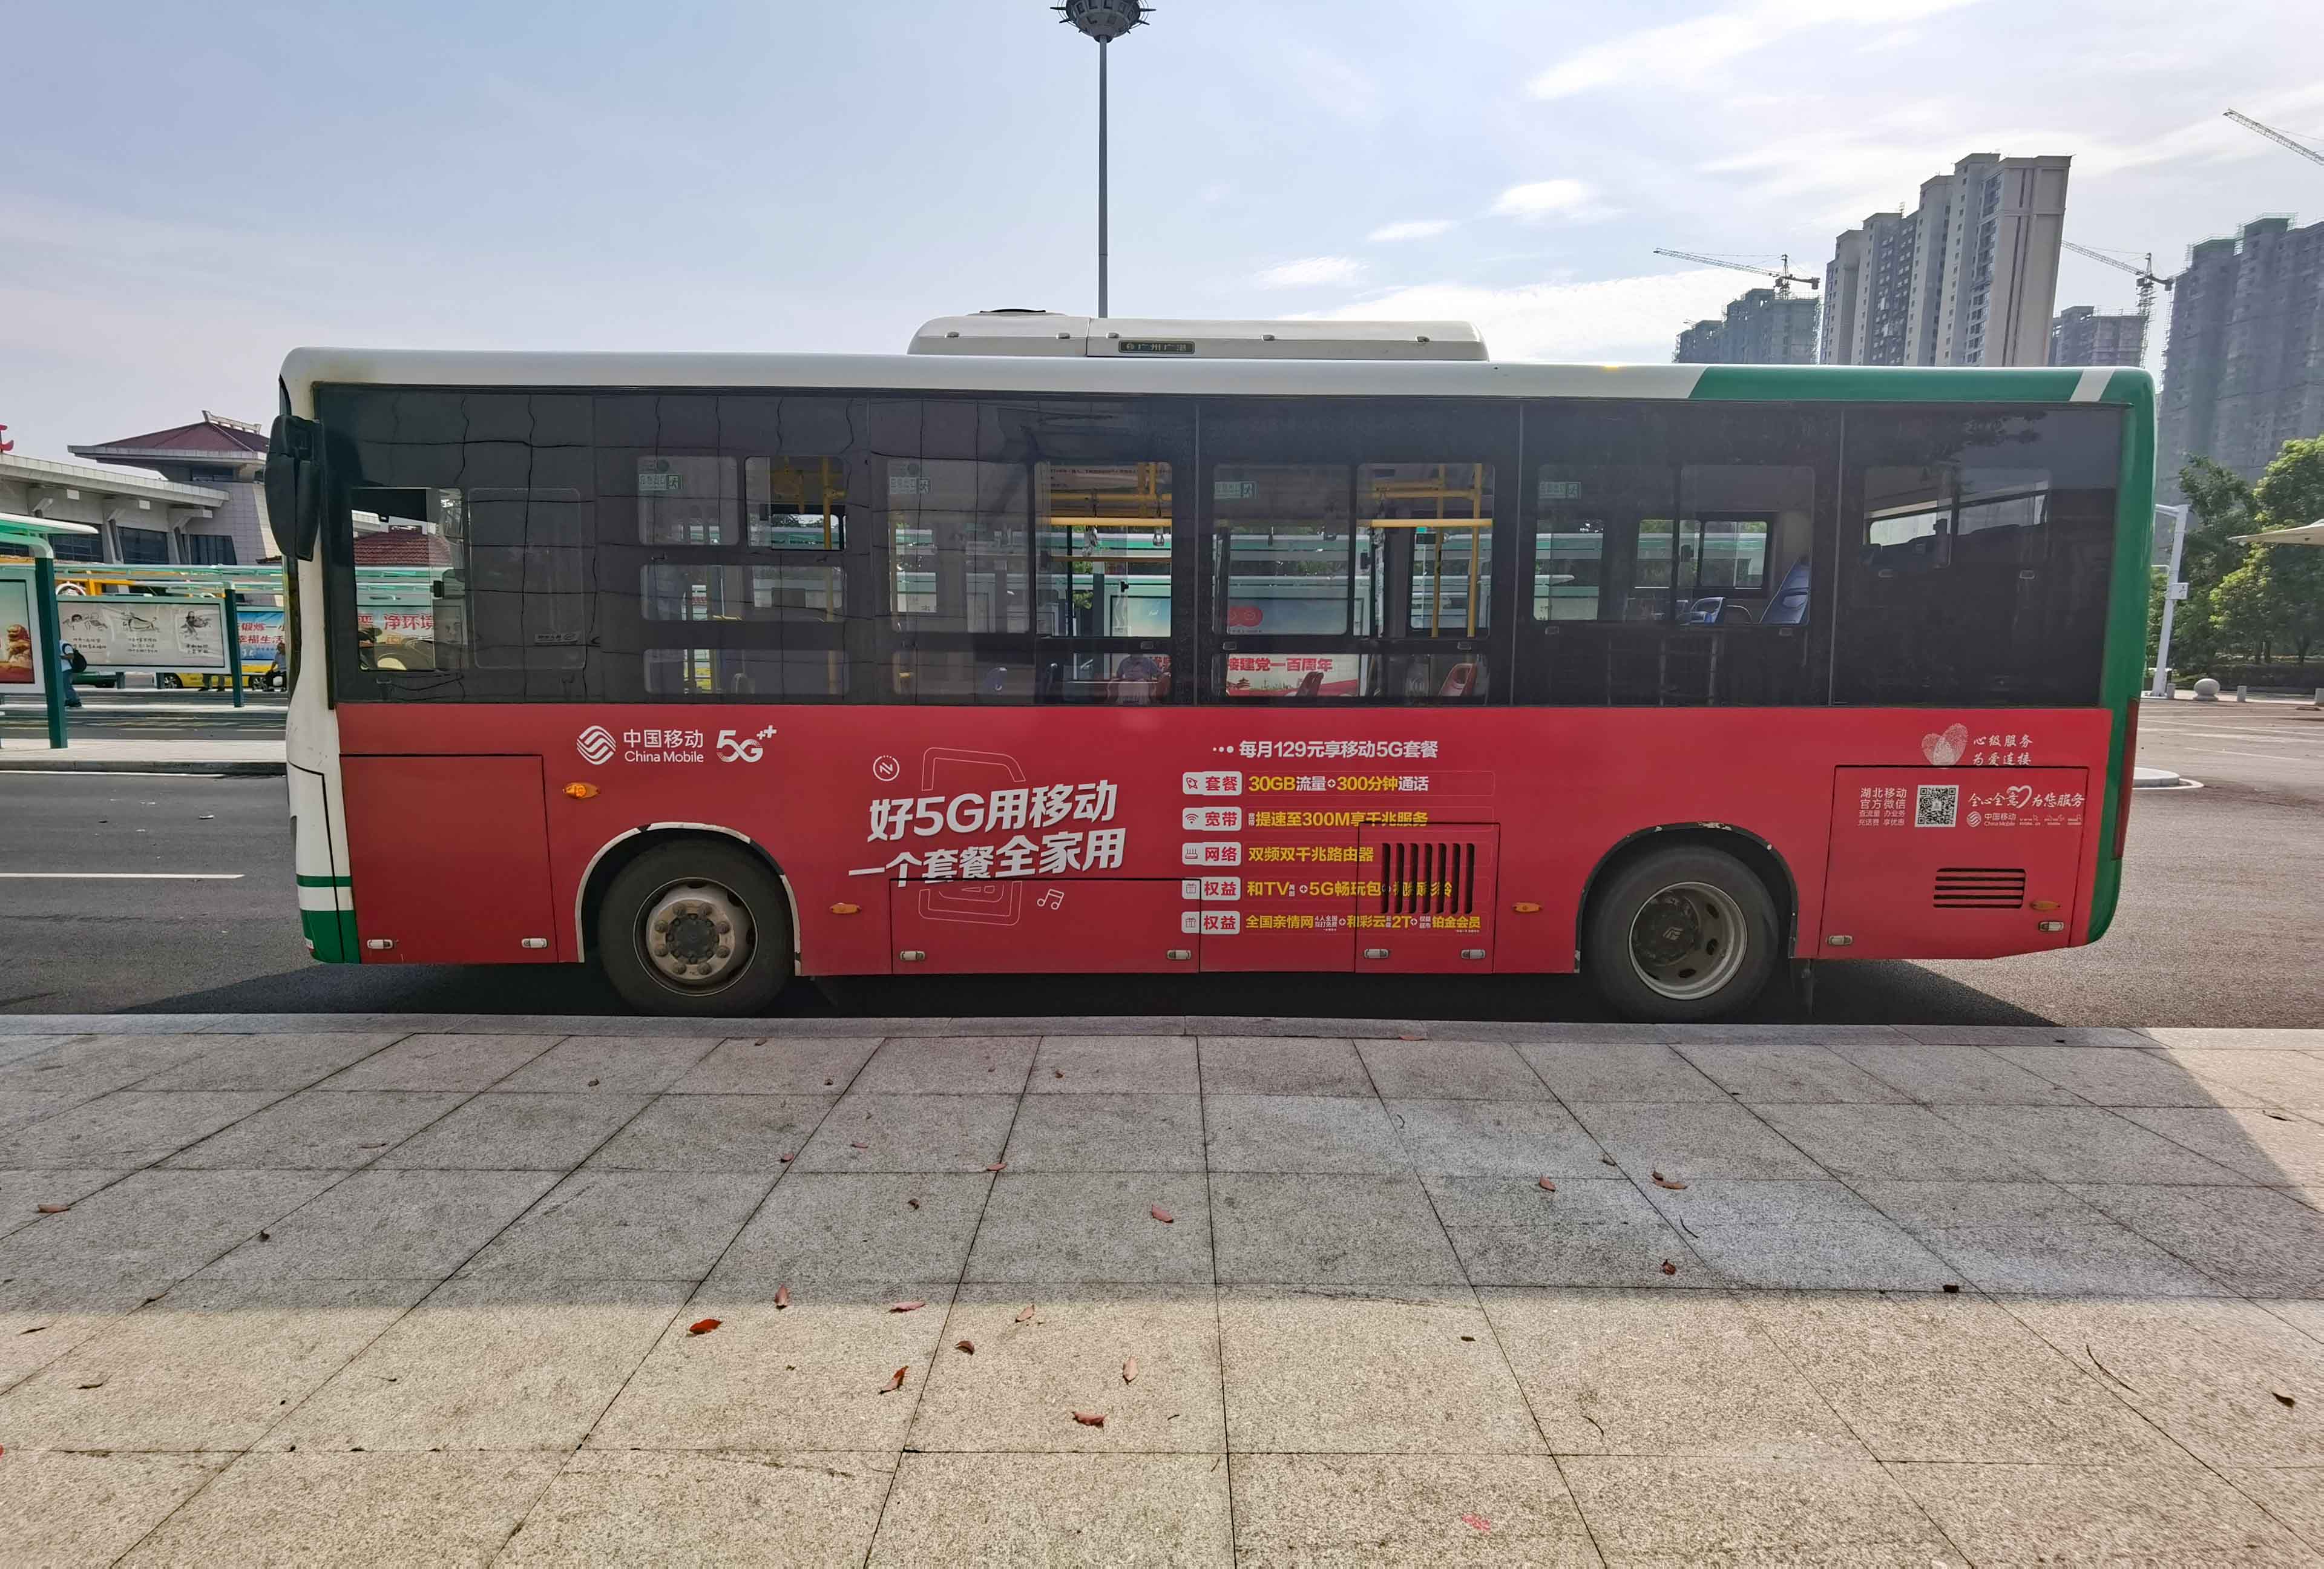 公交车车身广告报价表